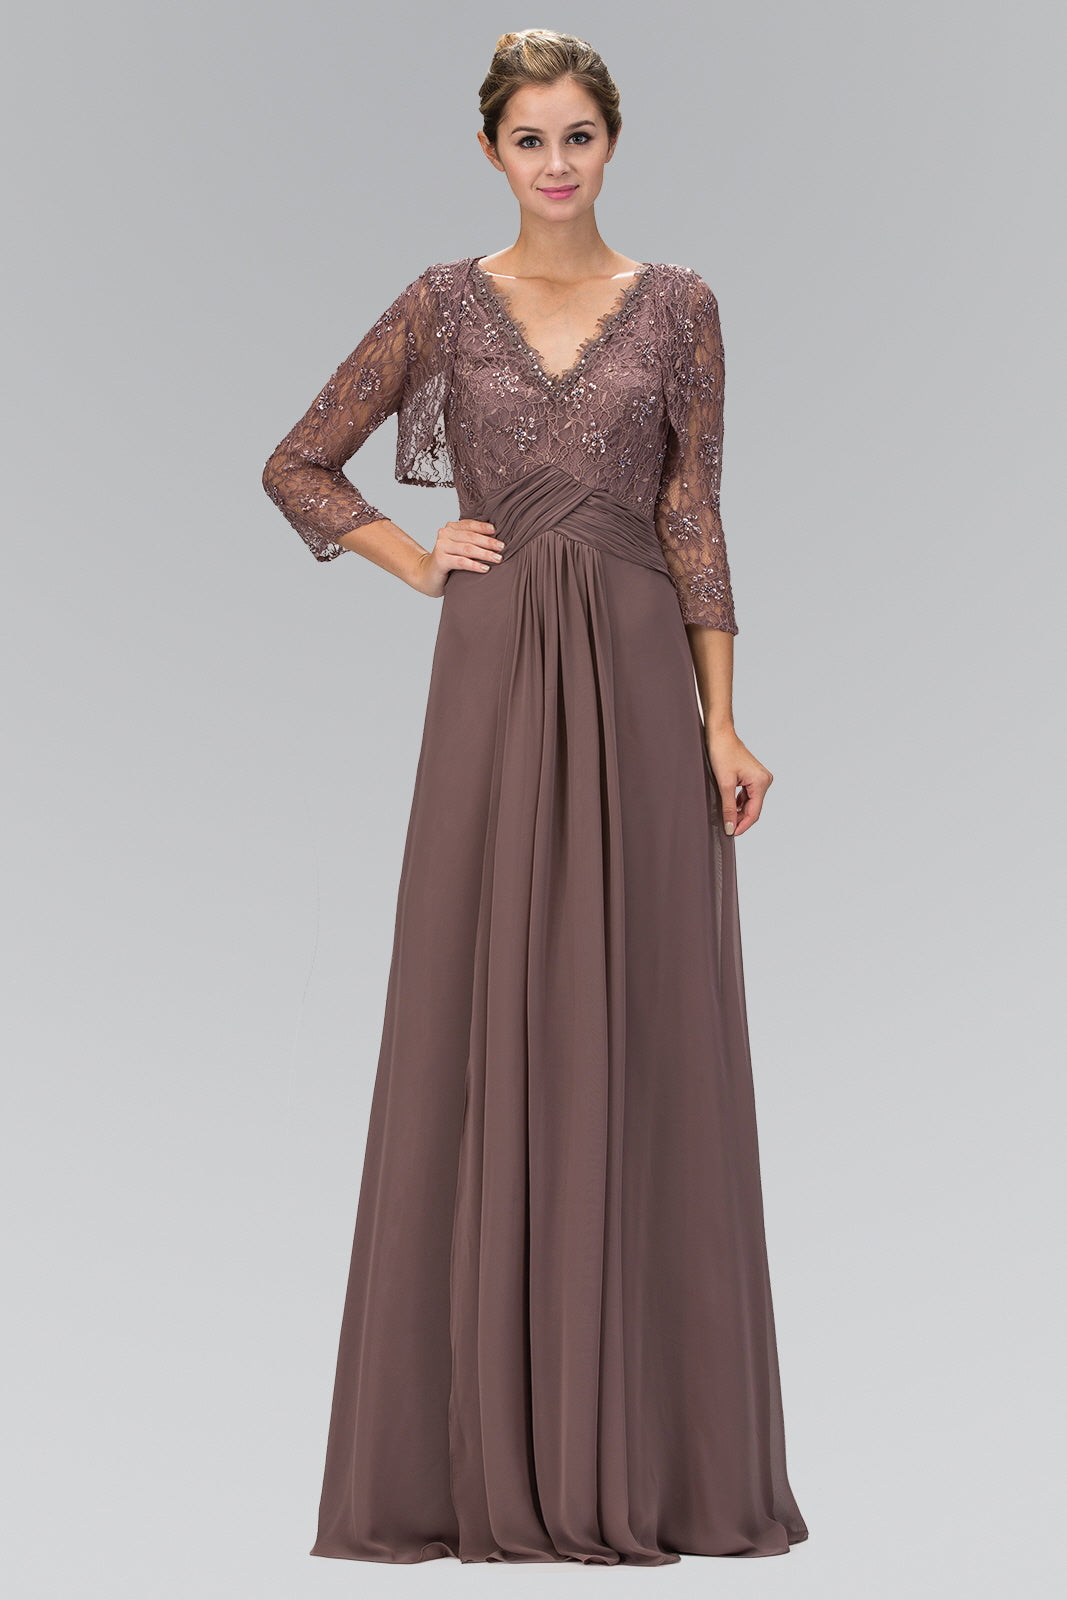 V-Neck Floor Length Dress with Long Sleeve Lace Bolero Cardigan-smcdress